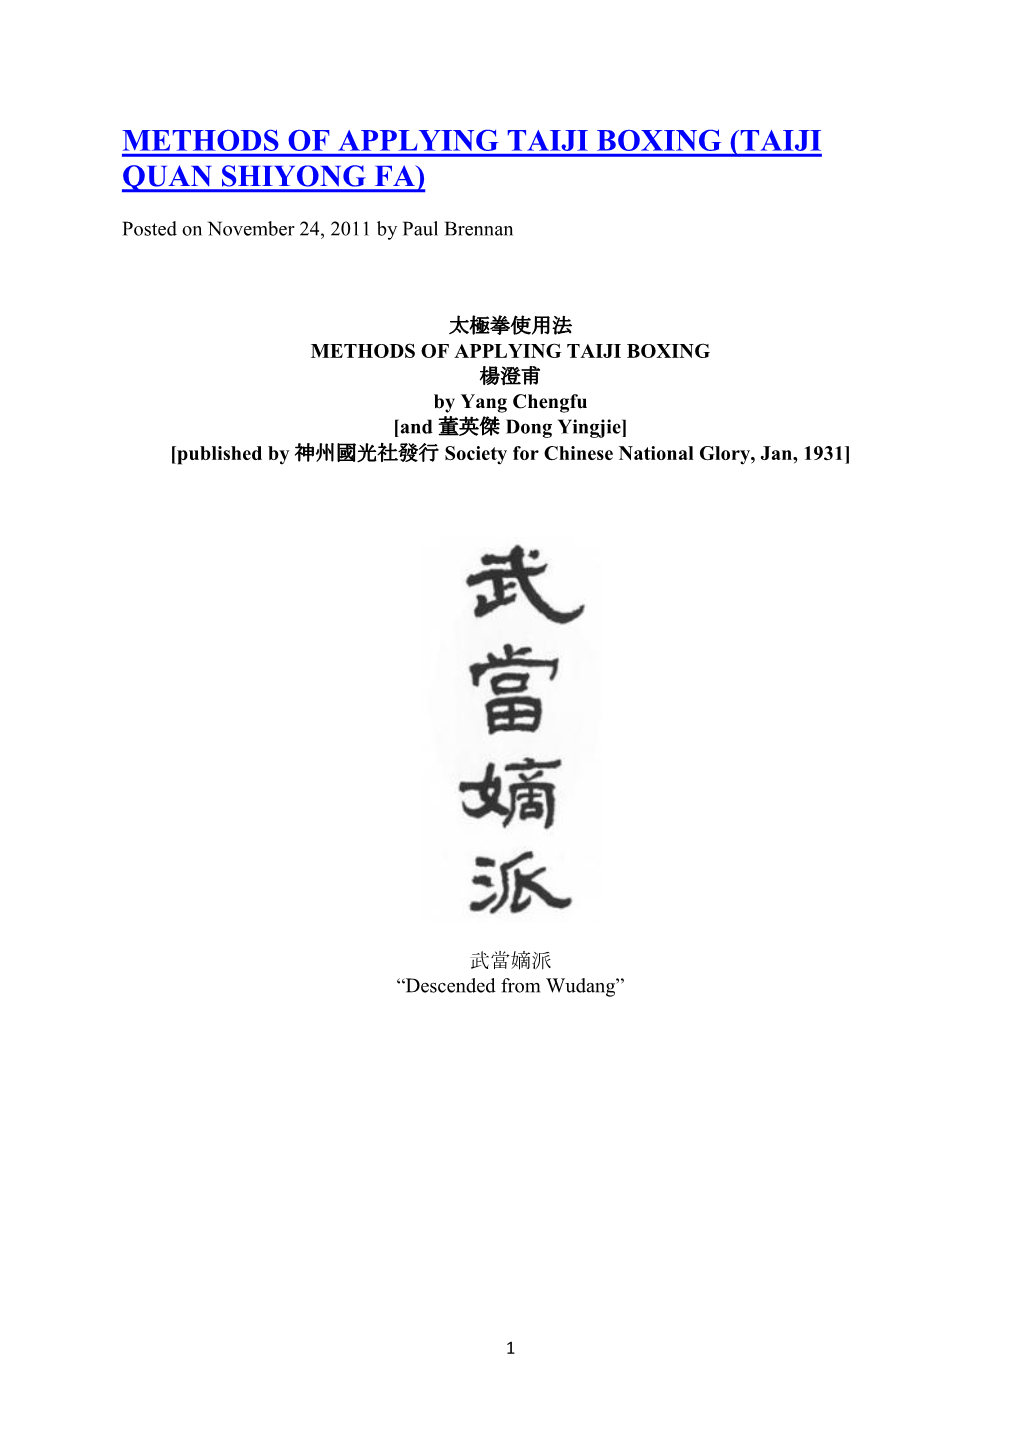 Methods of Applying Taiji Boxing (Taiji Quan Shiyong Fa)